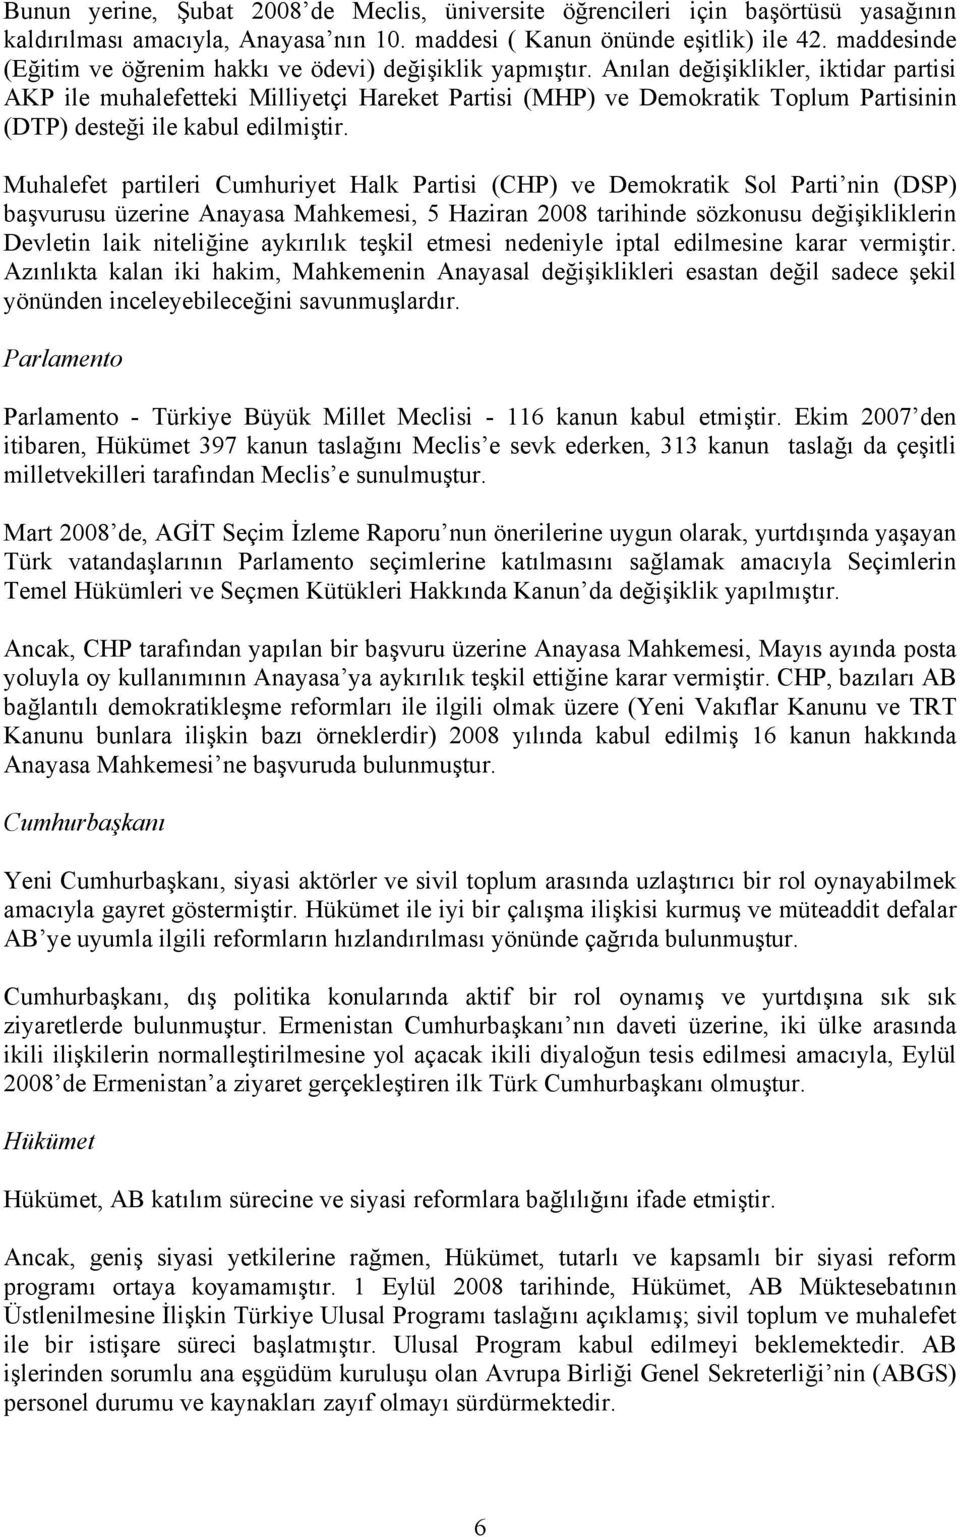 Anılan değişiklikler, iktidar partisi AKP ile muhalefetteki Milliyetçi Hareket Partisi (MHP) ve Demokratik Toplum Partisinin (DTP) desteği ile kabul edilmiştir.